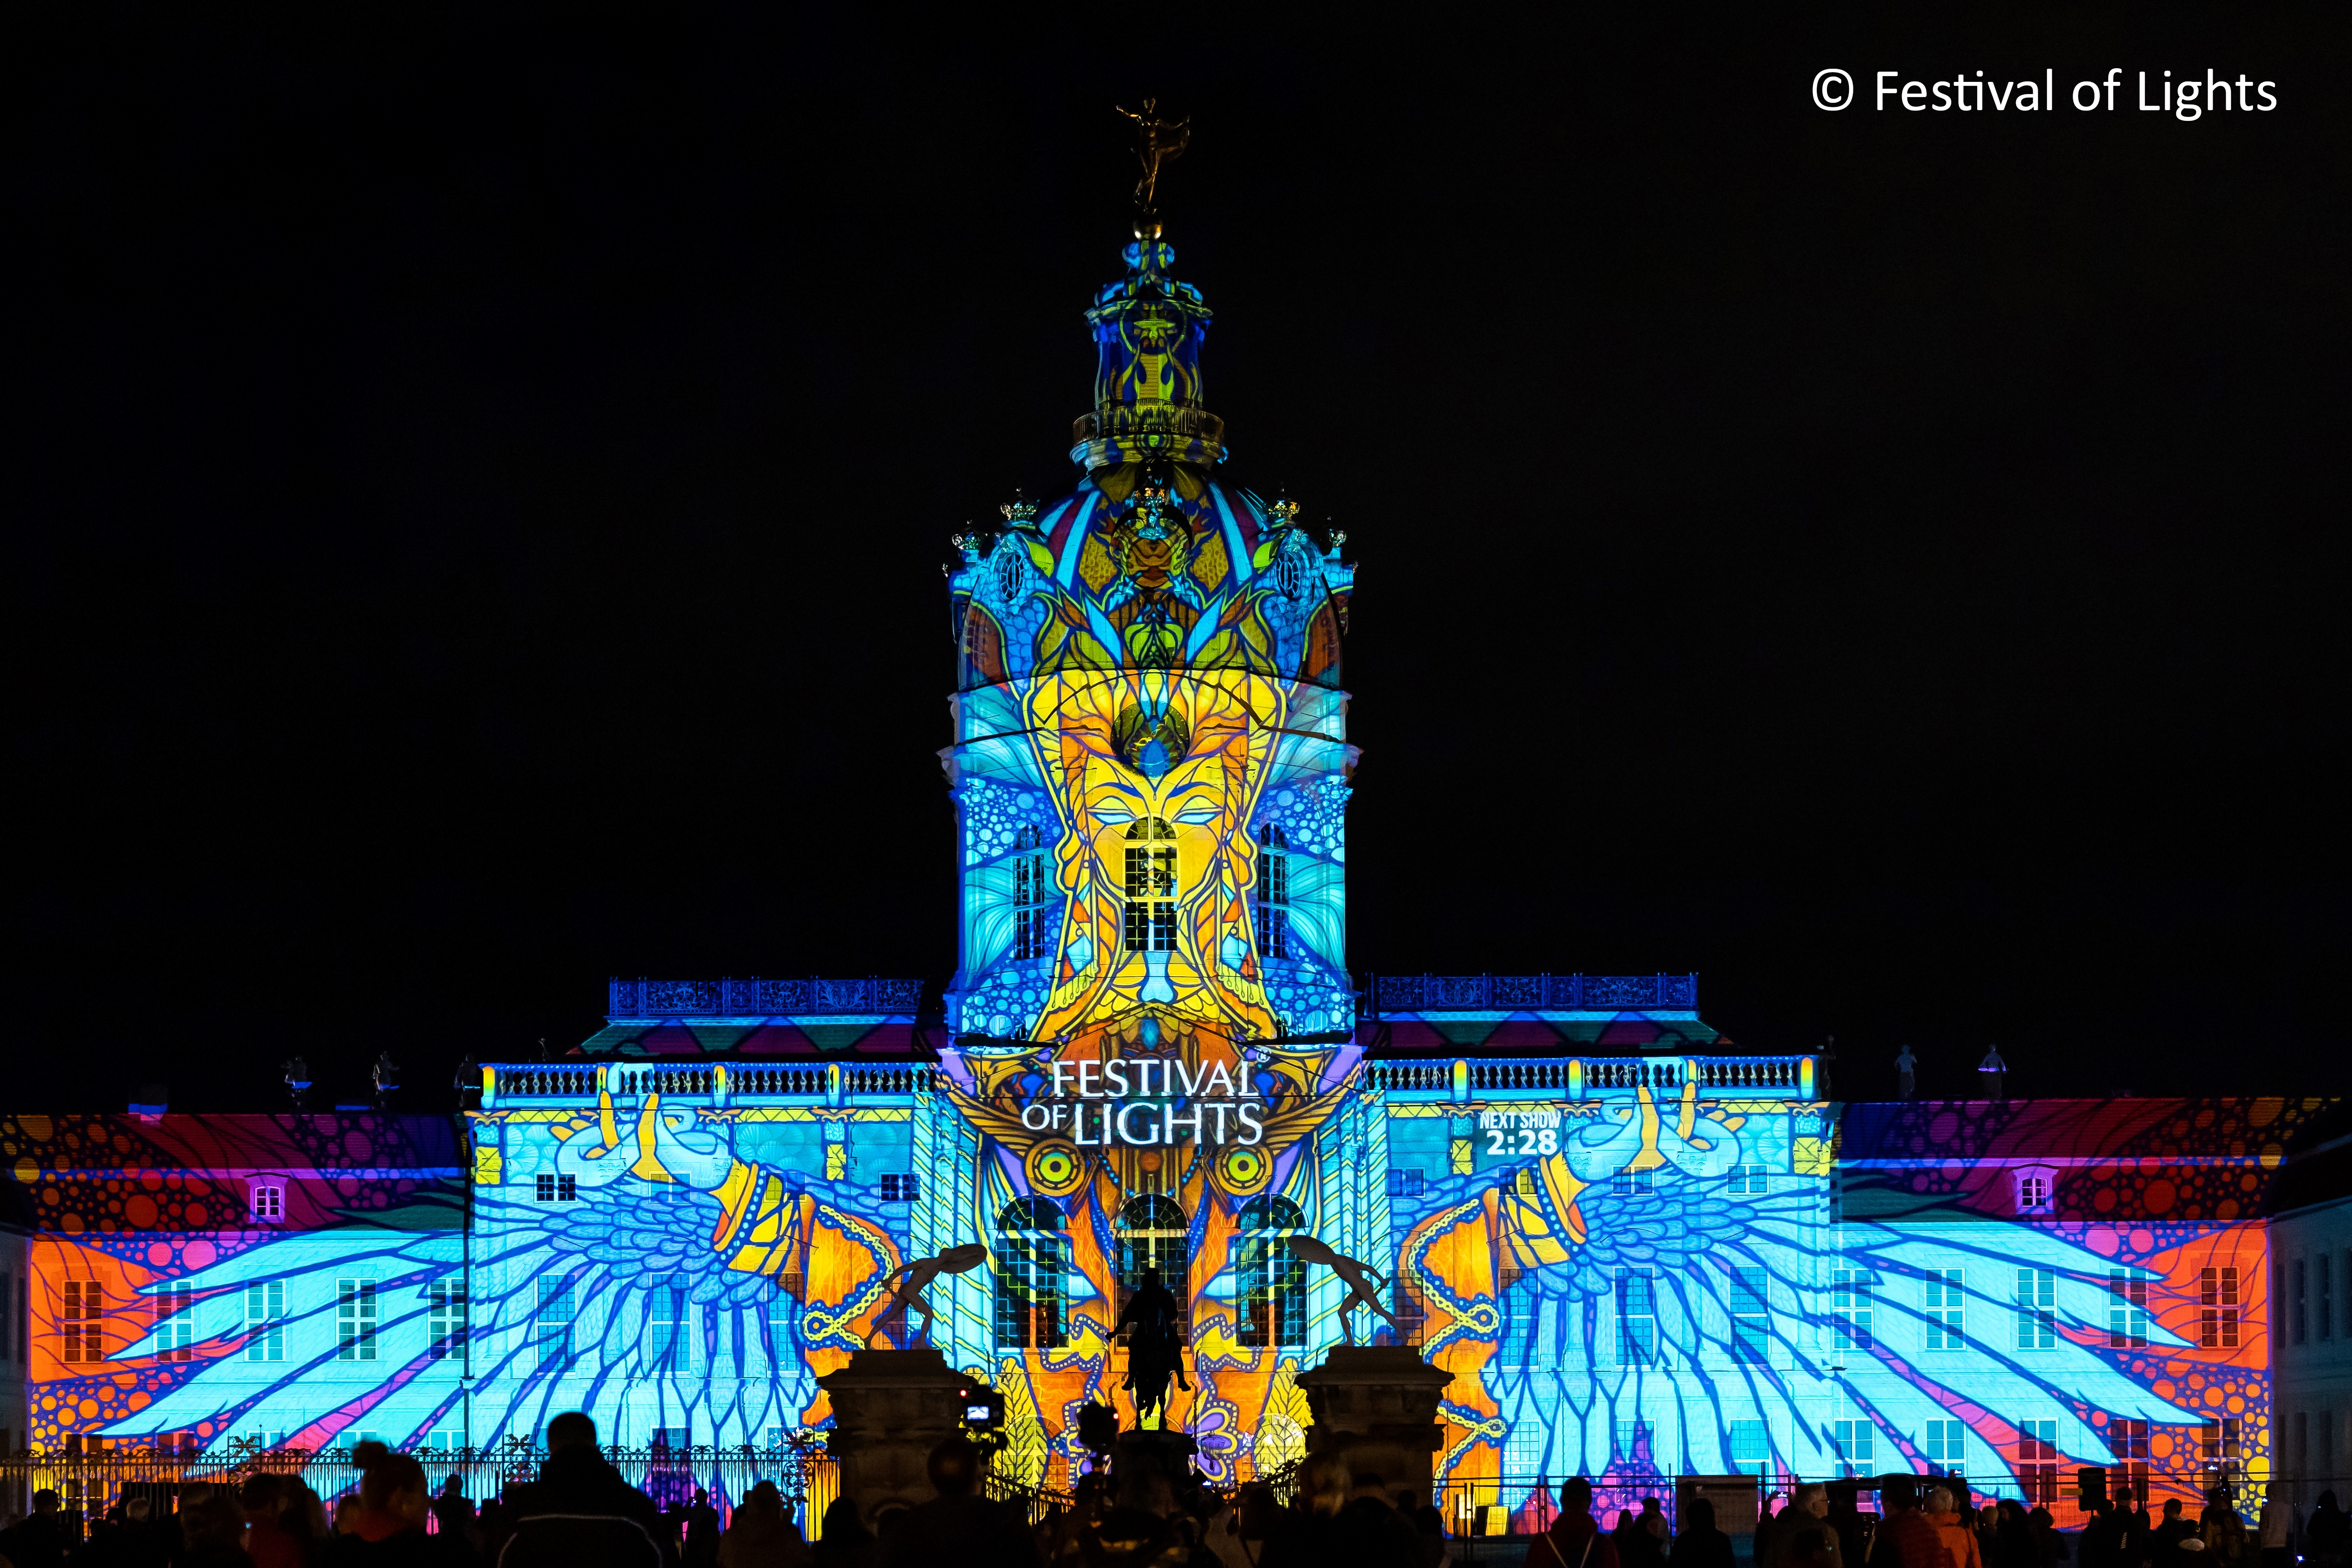 BERLIN - Festival of Lights